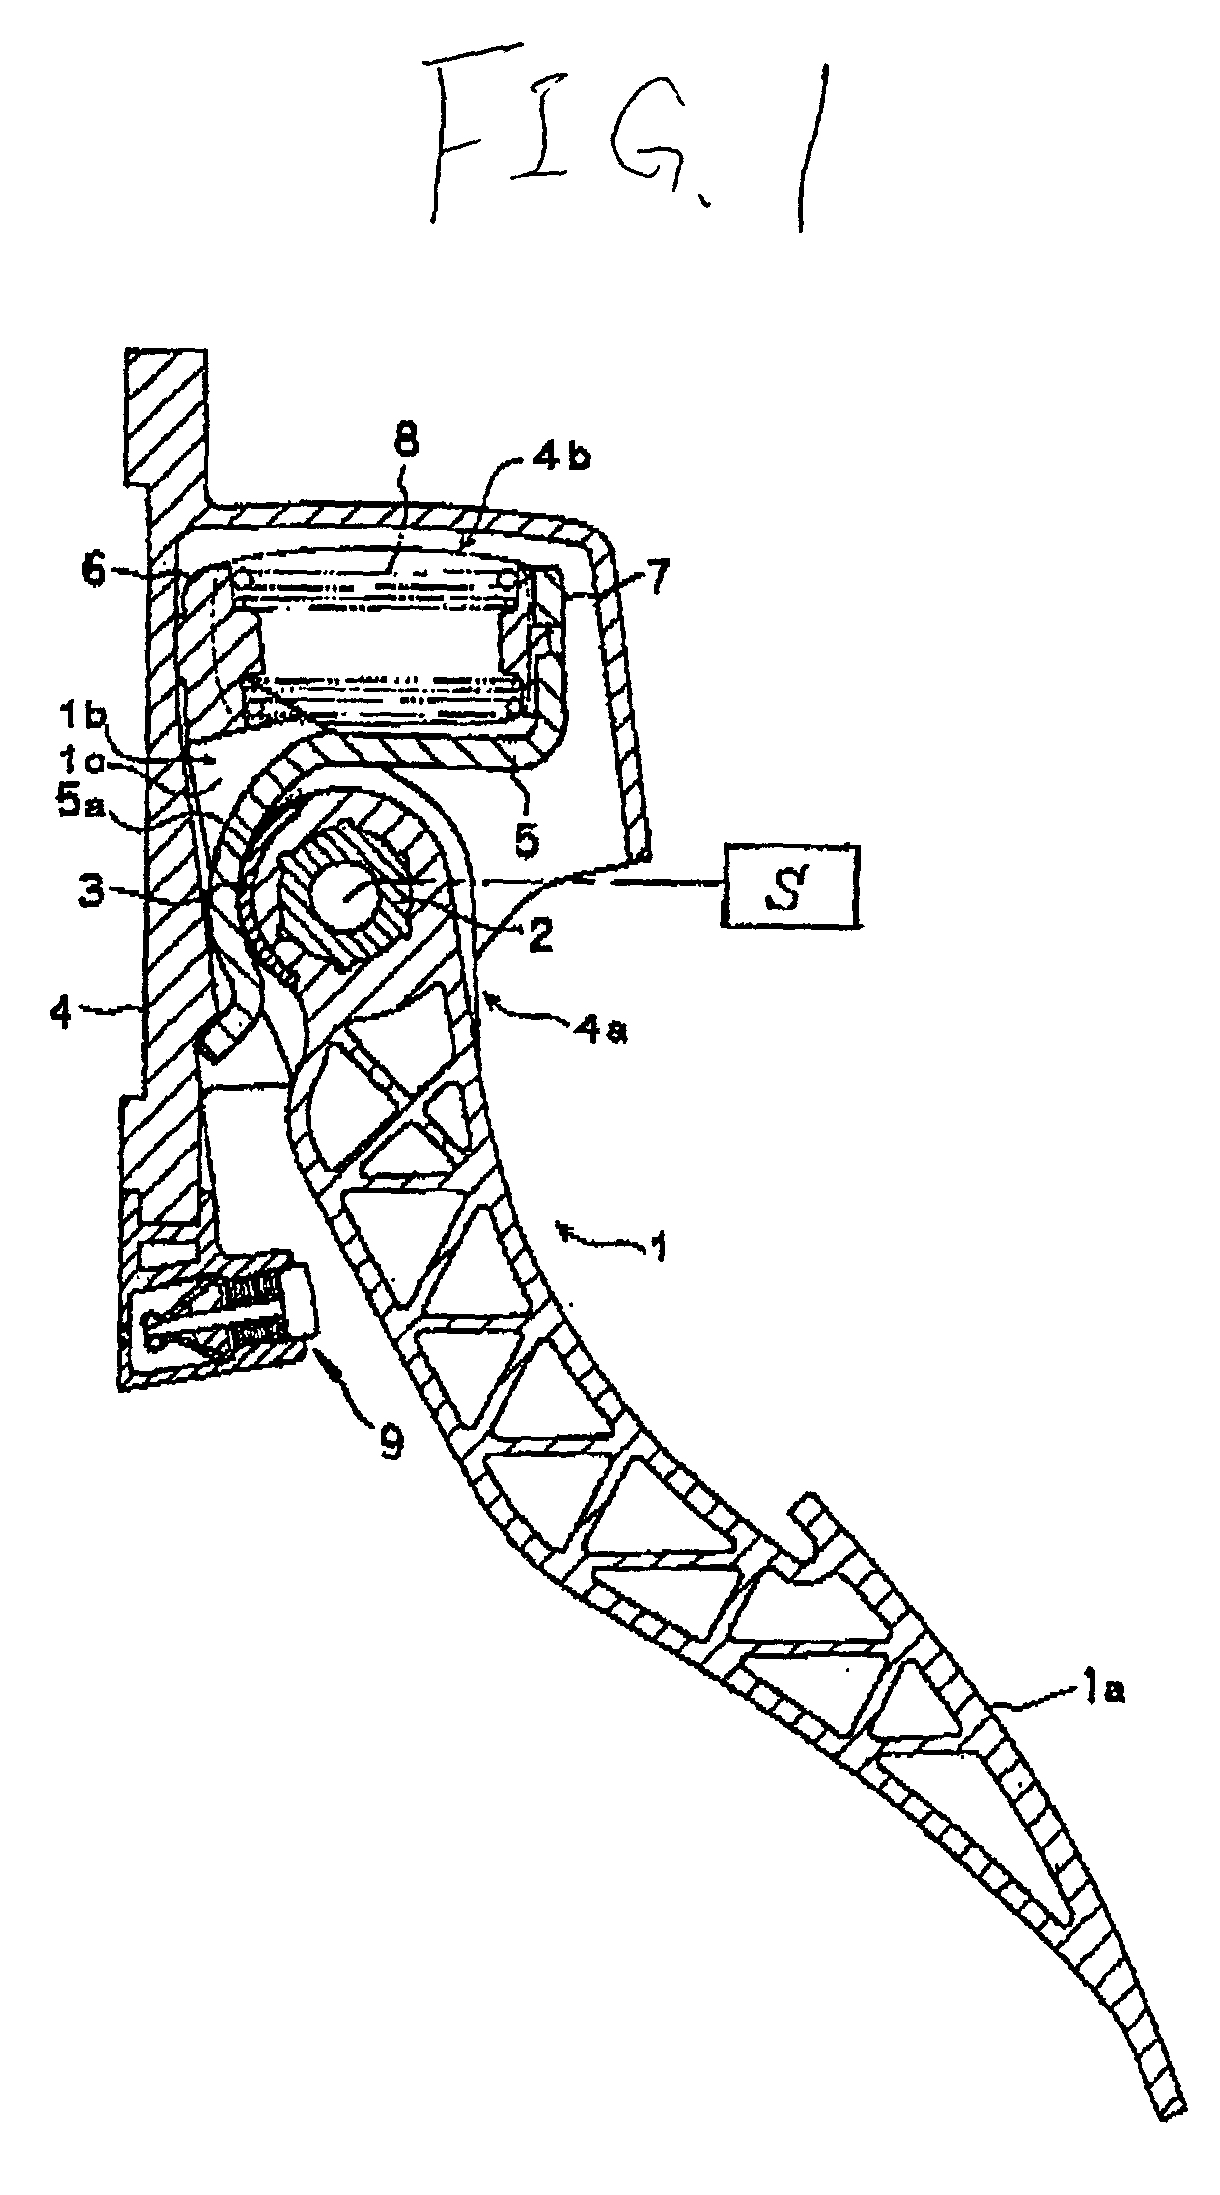 Accelerator pedal device